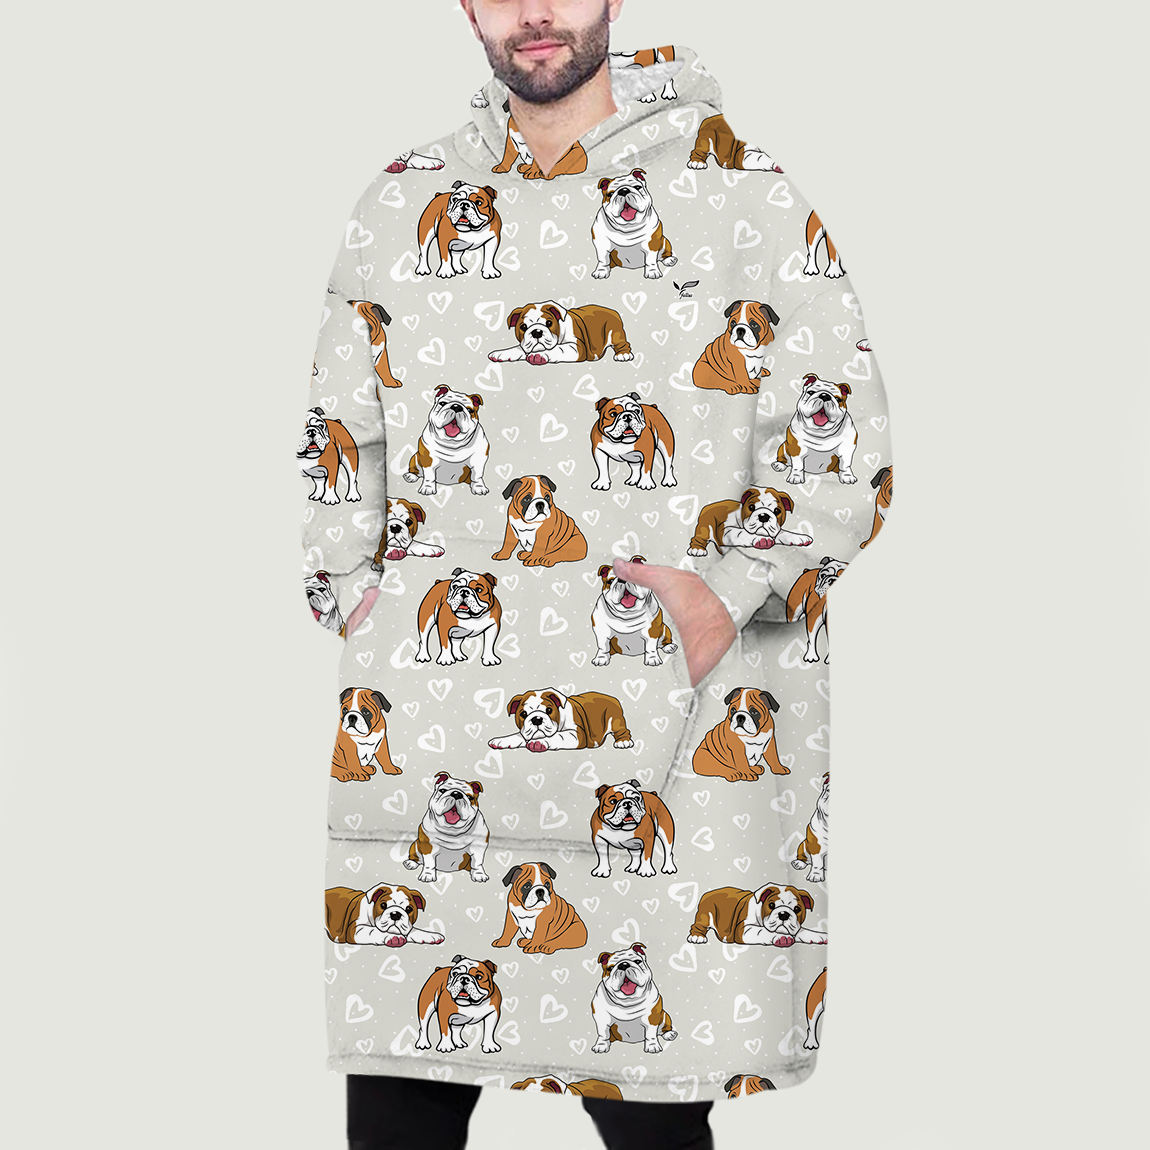 I Love Hearts - English Bulldog Fleece Blanket Hoodie